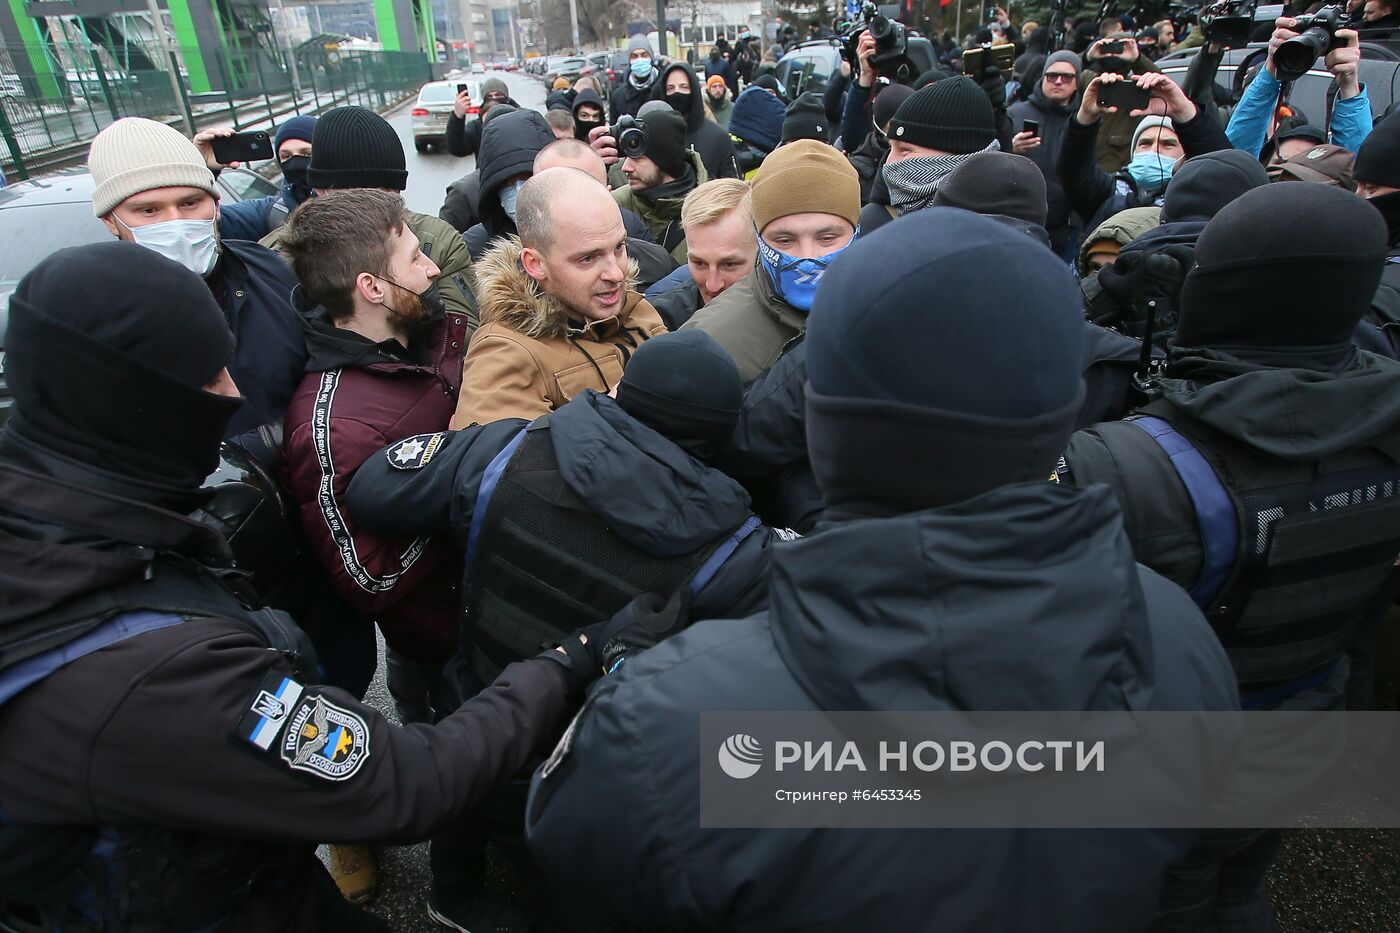 Акция националистов в Киеве с требованием закрытия телеканала "Наш"